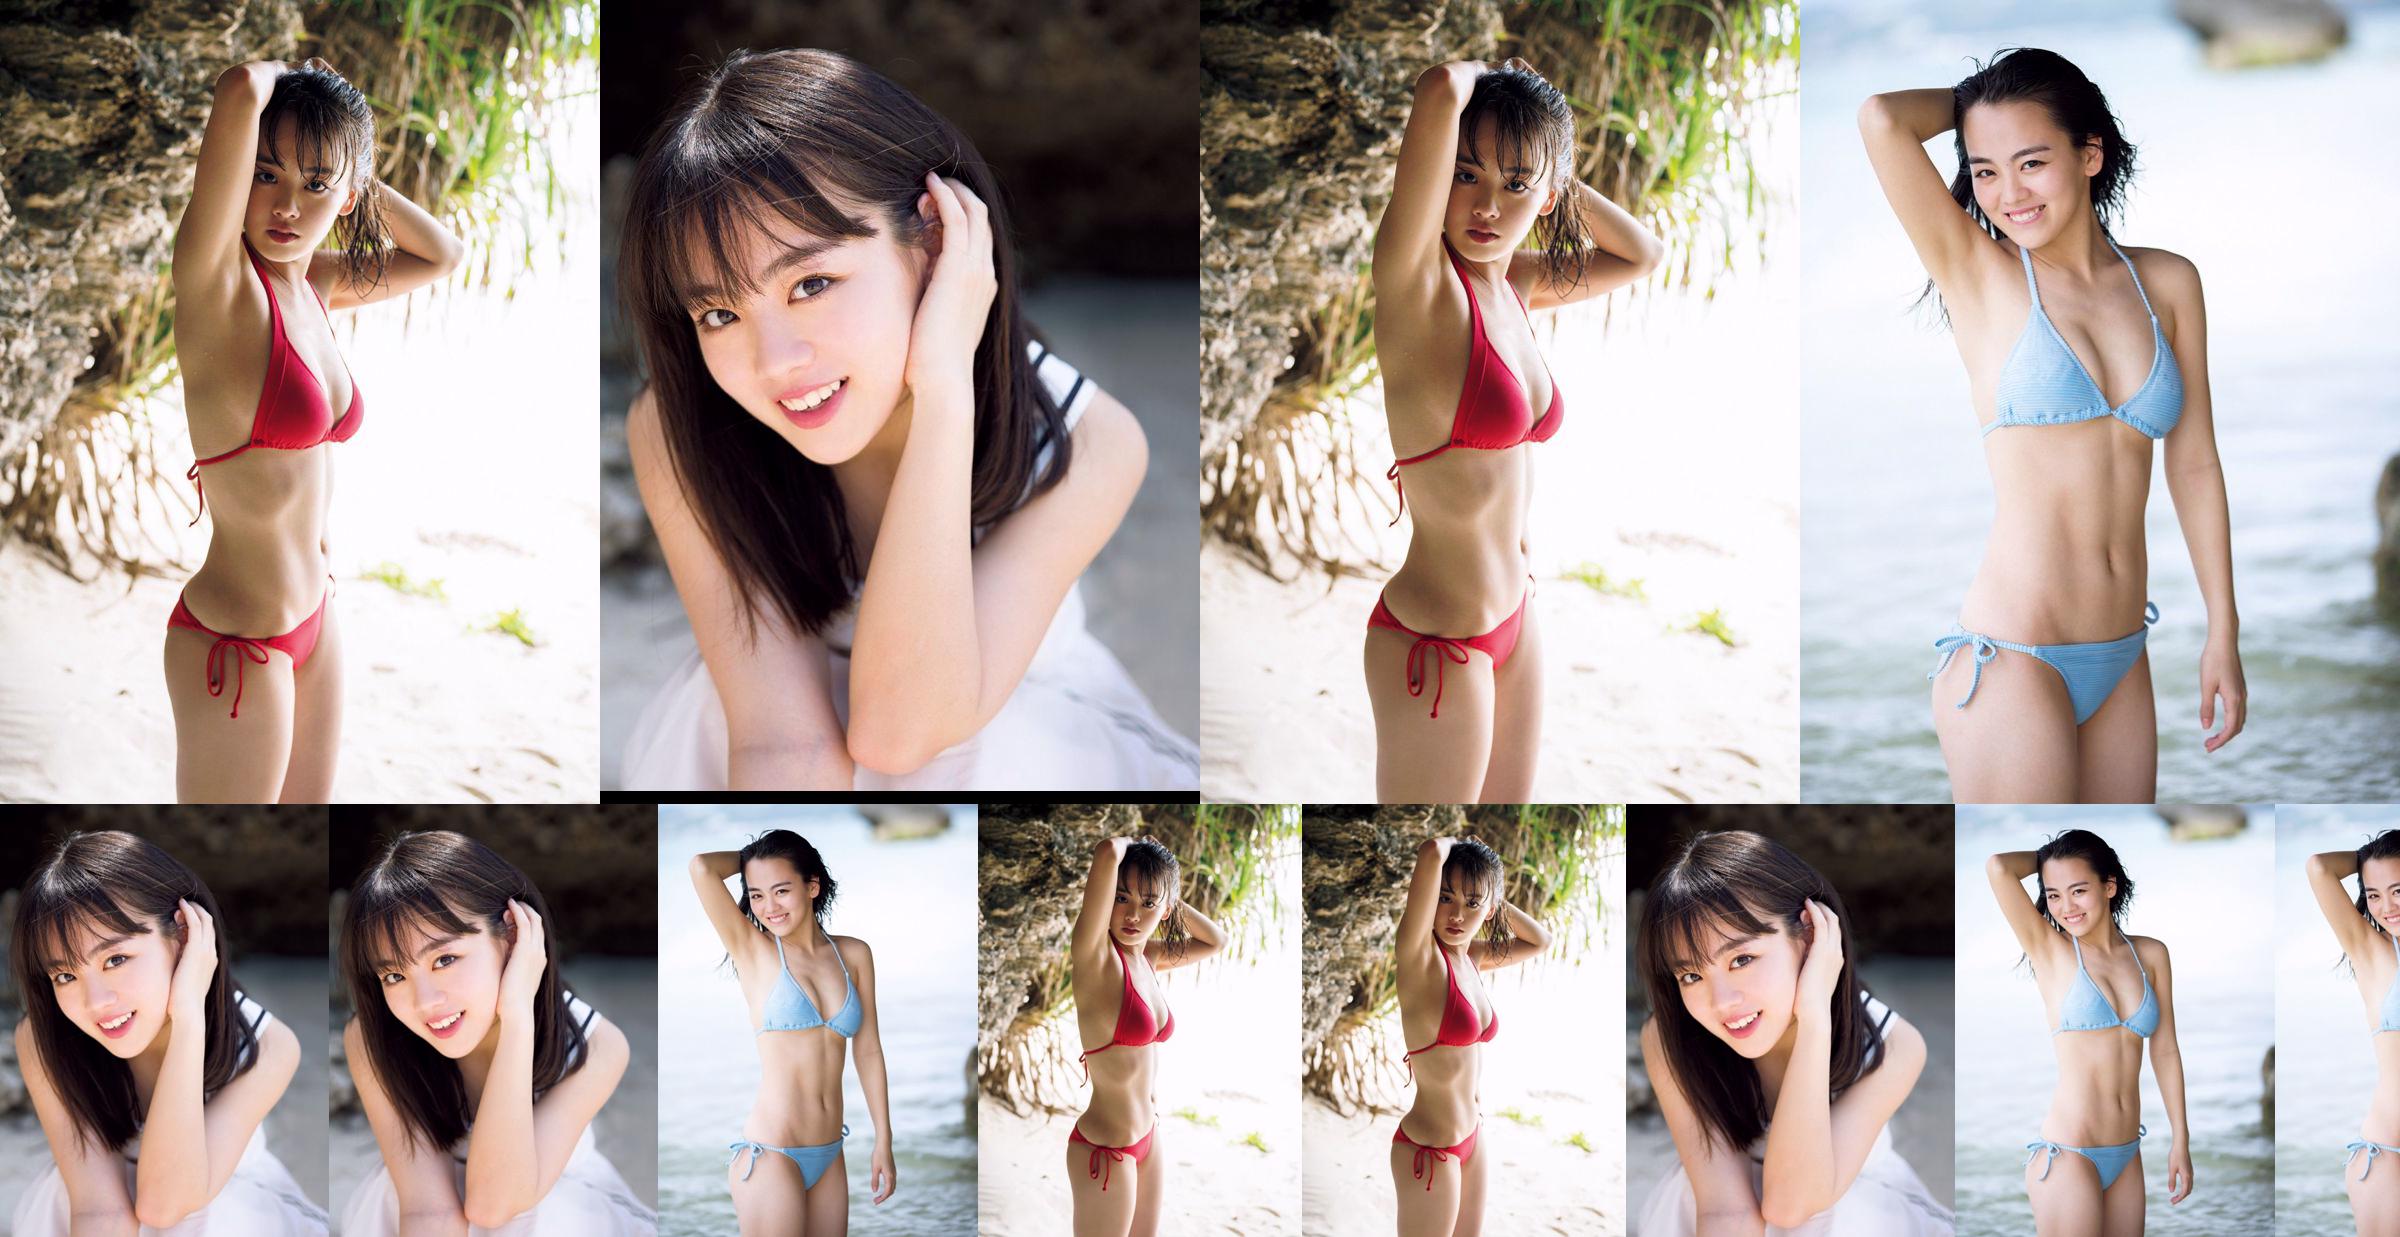 [THỨ SÁU] Rikka Ihara << Cựu đội trưởng câu lạc bộ khiêu vũ trường trung học Tomioka ra mắt trong bộ bikini >> Ảnh No.5eb340 Trang 1